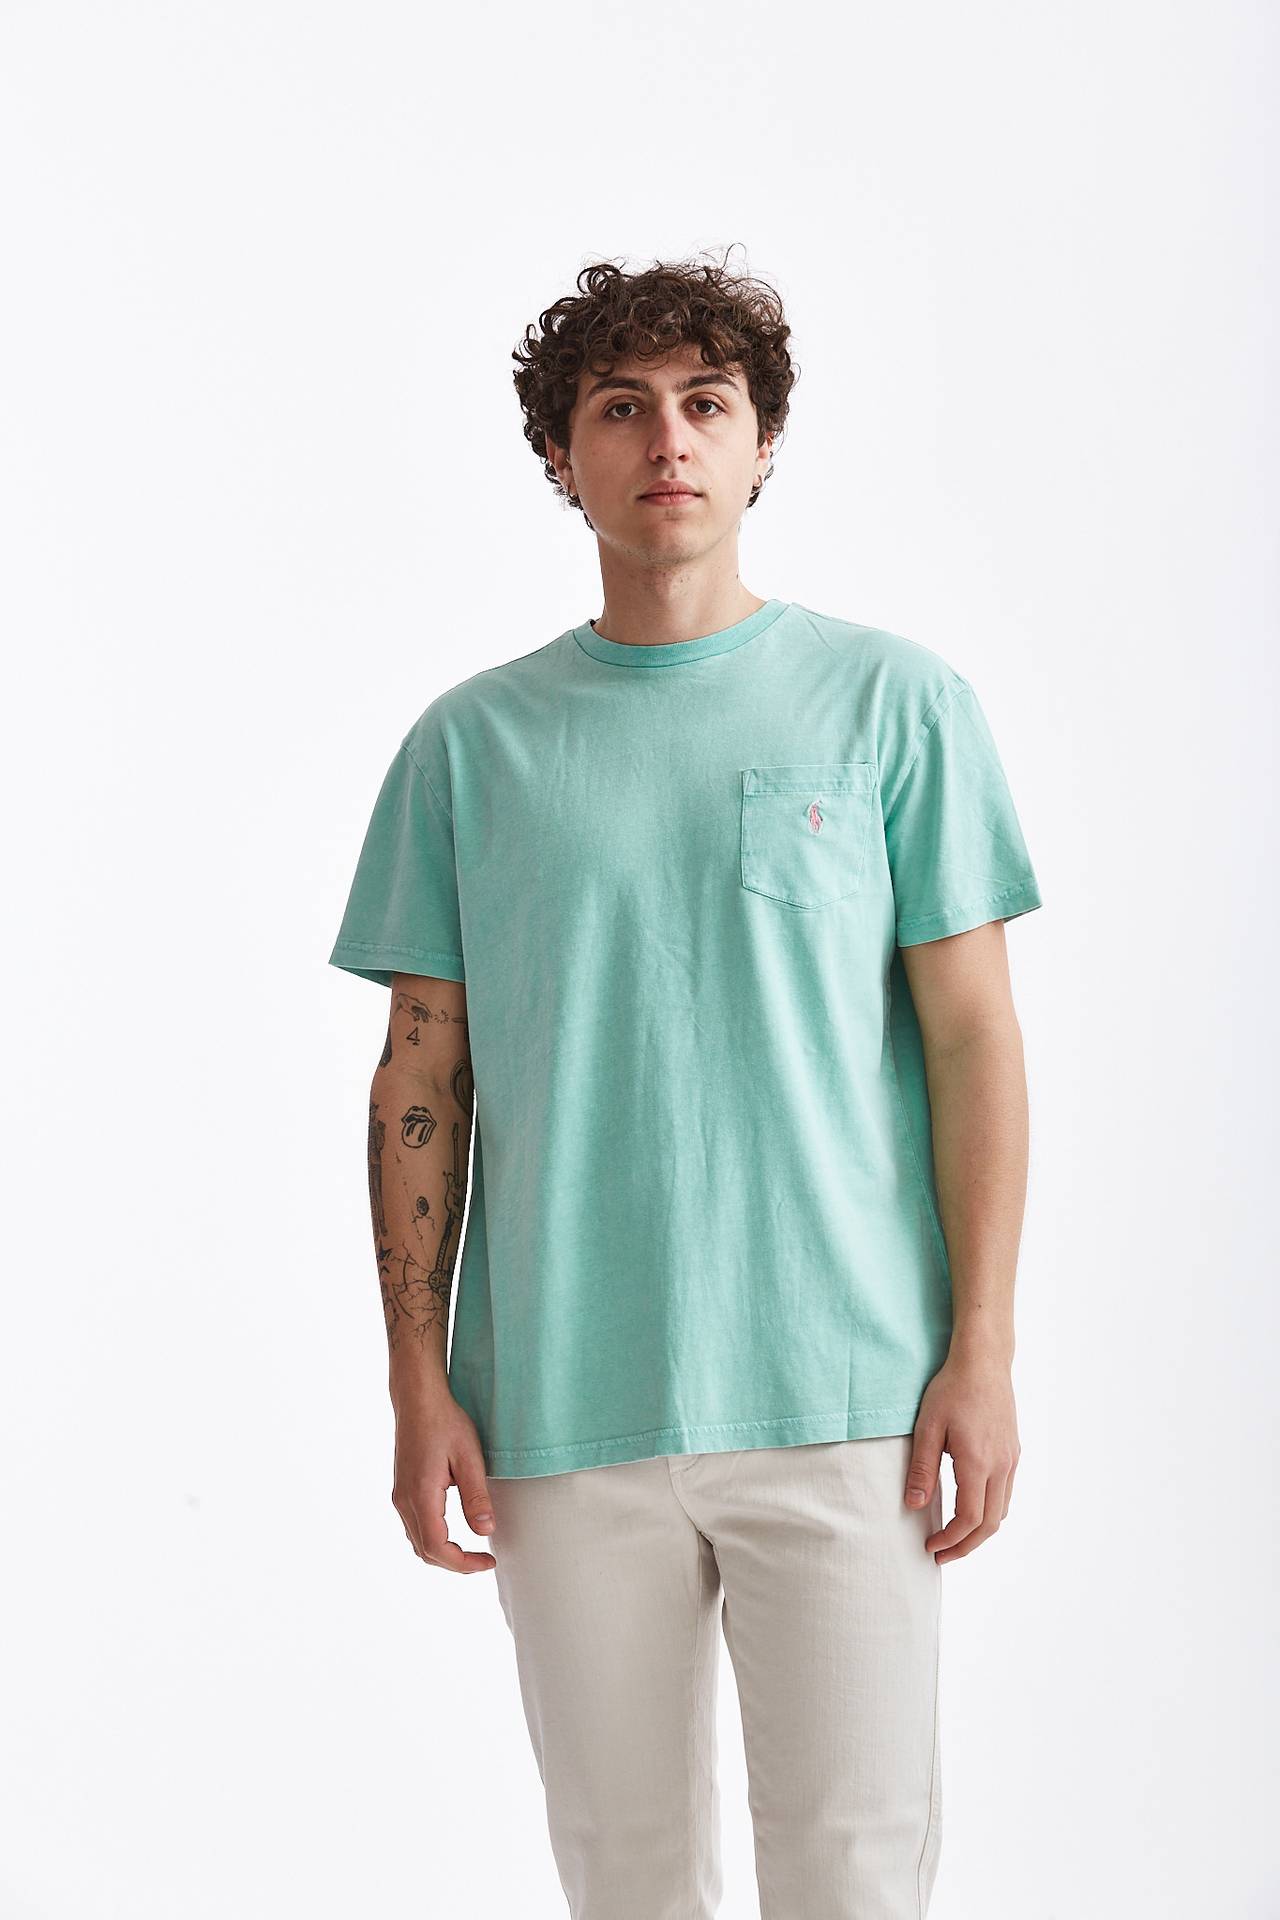 T-shirt in cotone/lino verde acqua